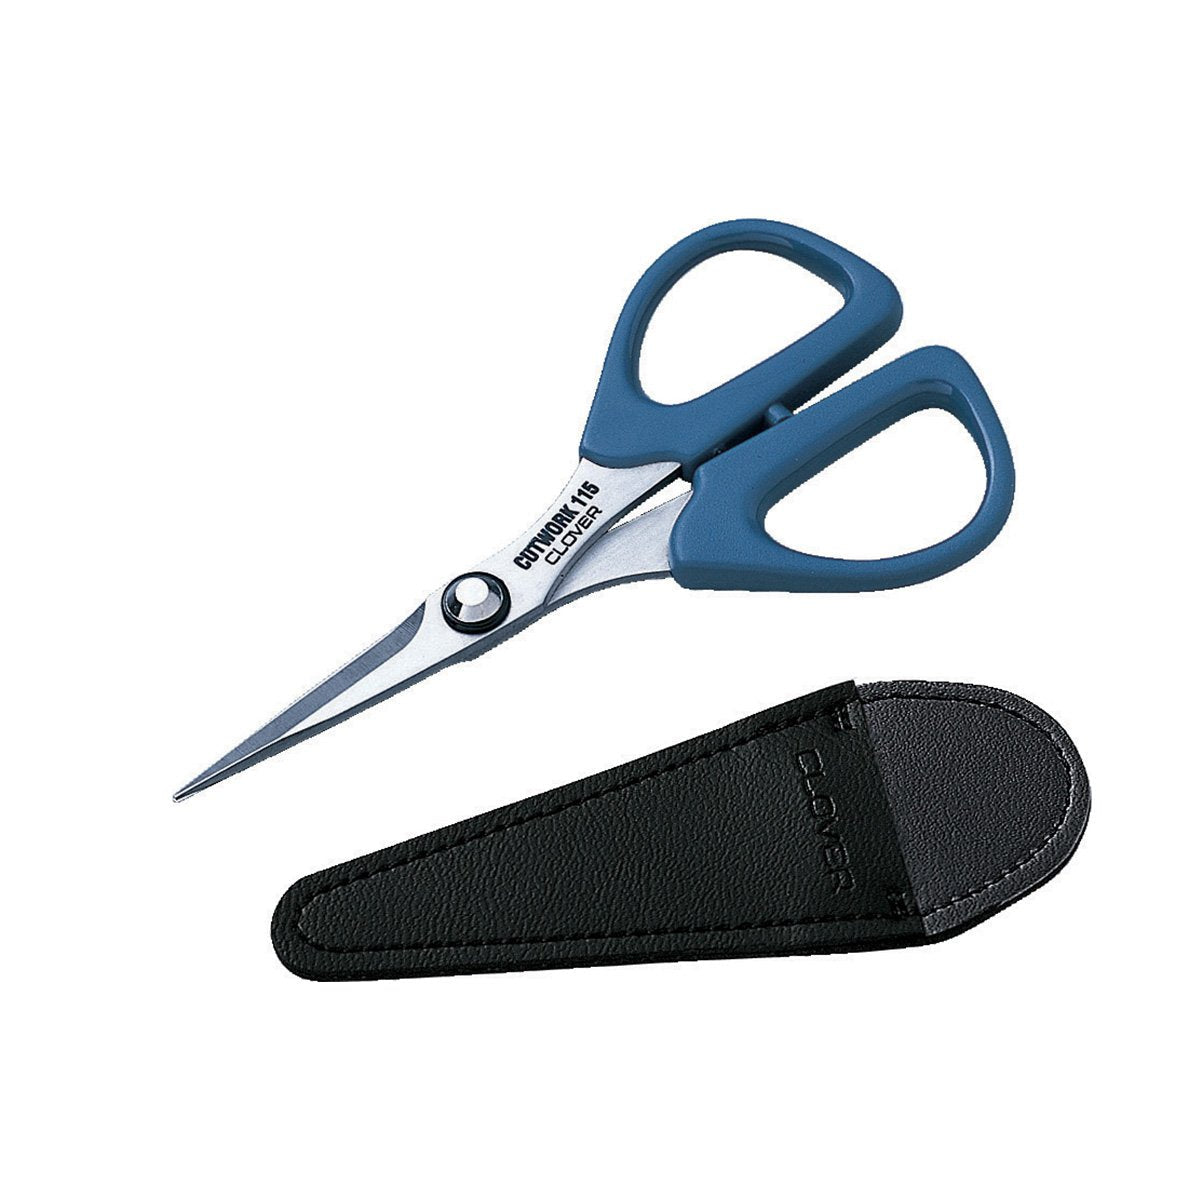 CLV - Patchwork Scissors (Mini) - 0